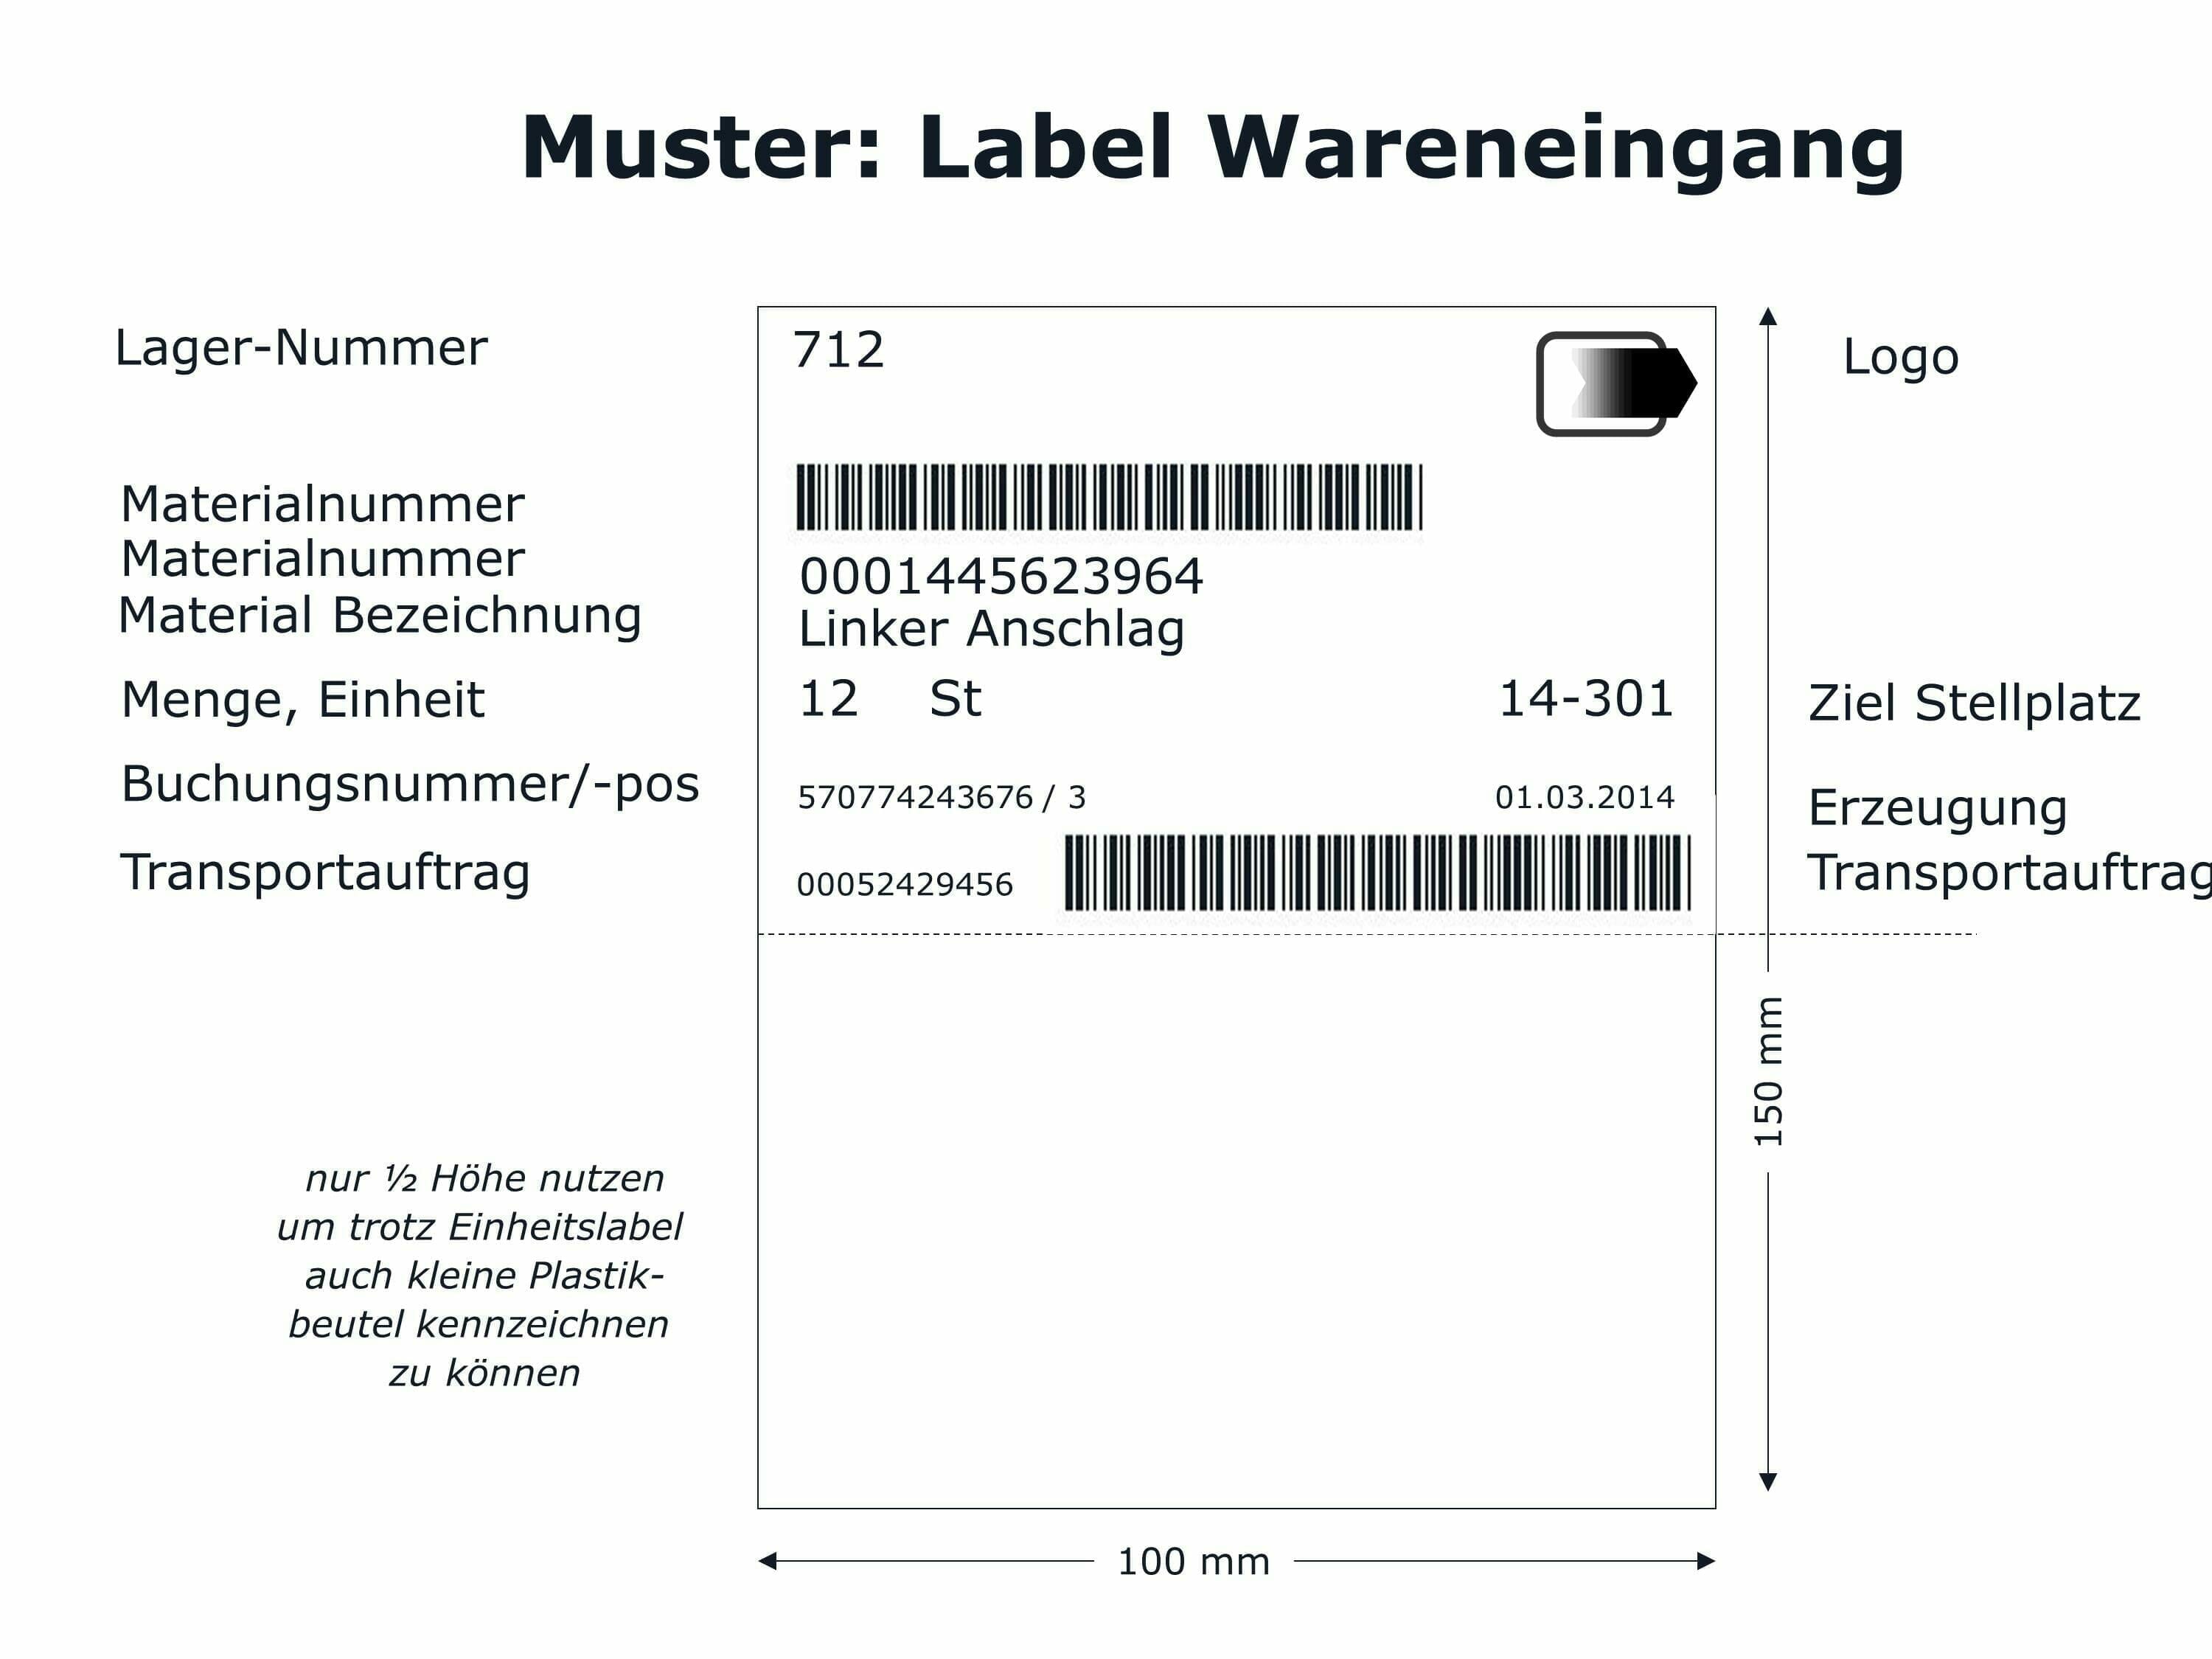 Muster für ein (einfaches) Label